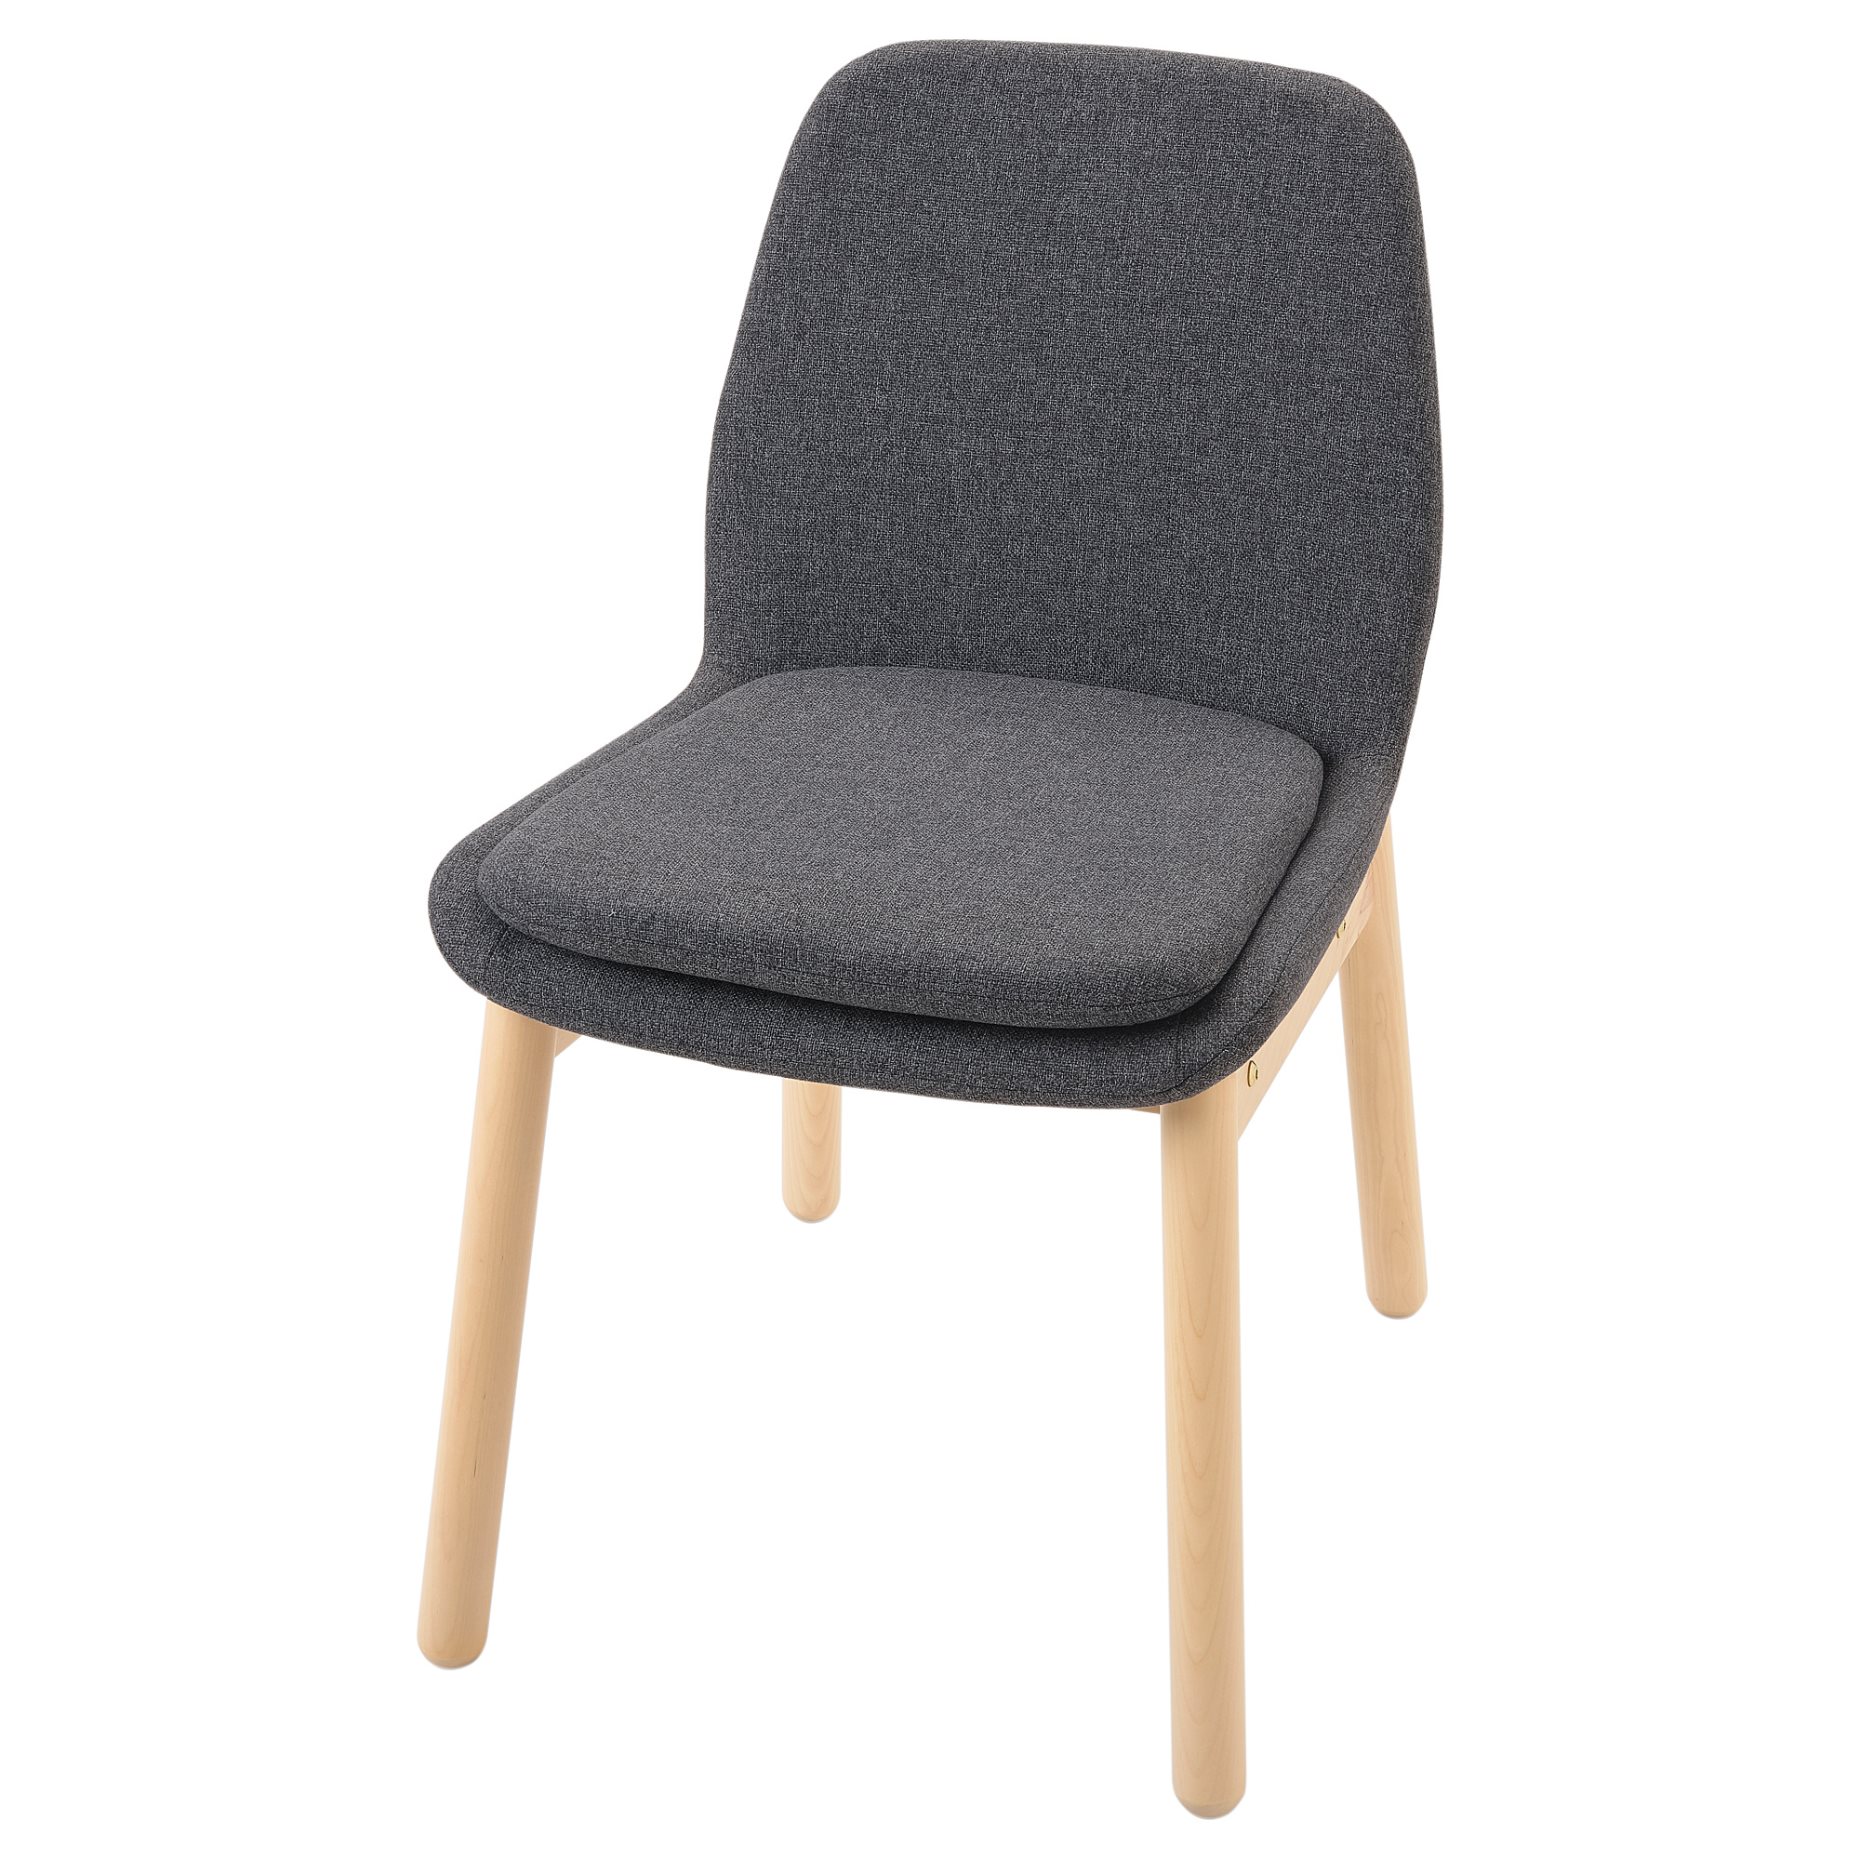 VEDBO, chair, 104.179.89